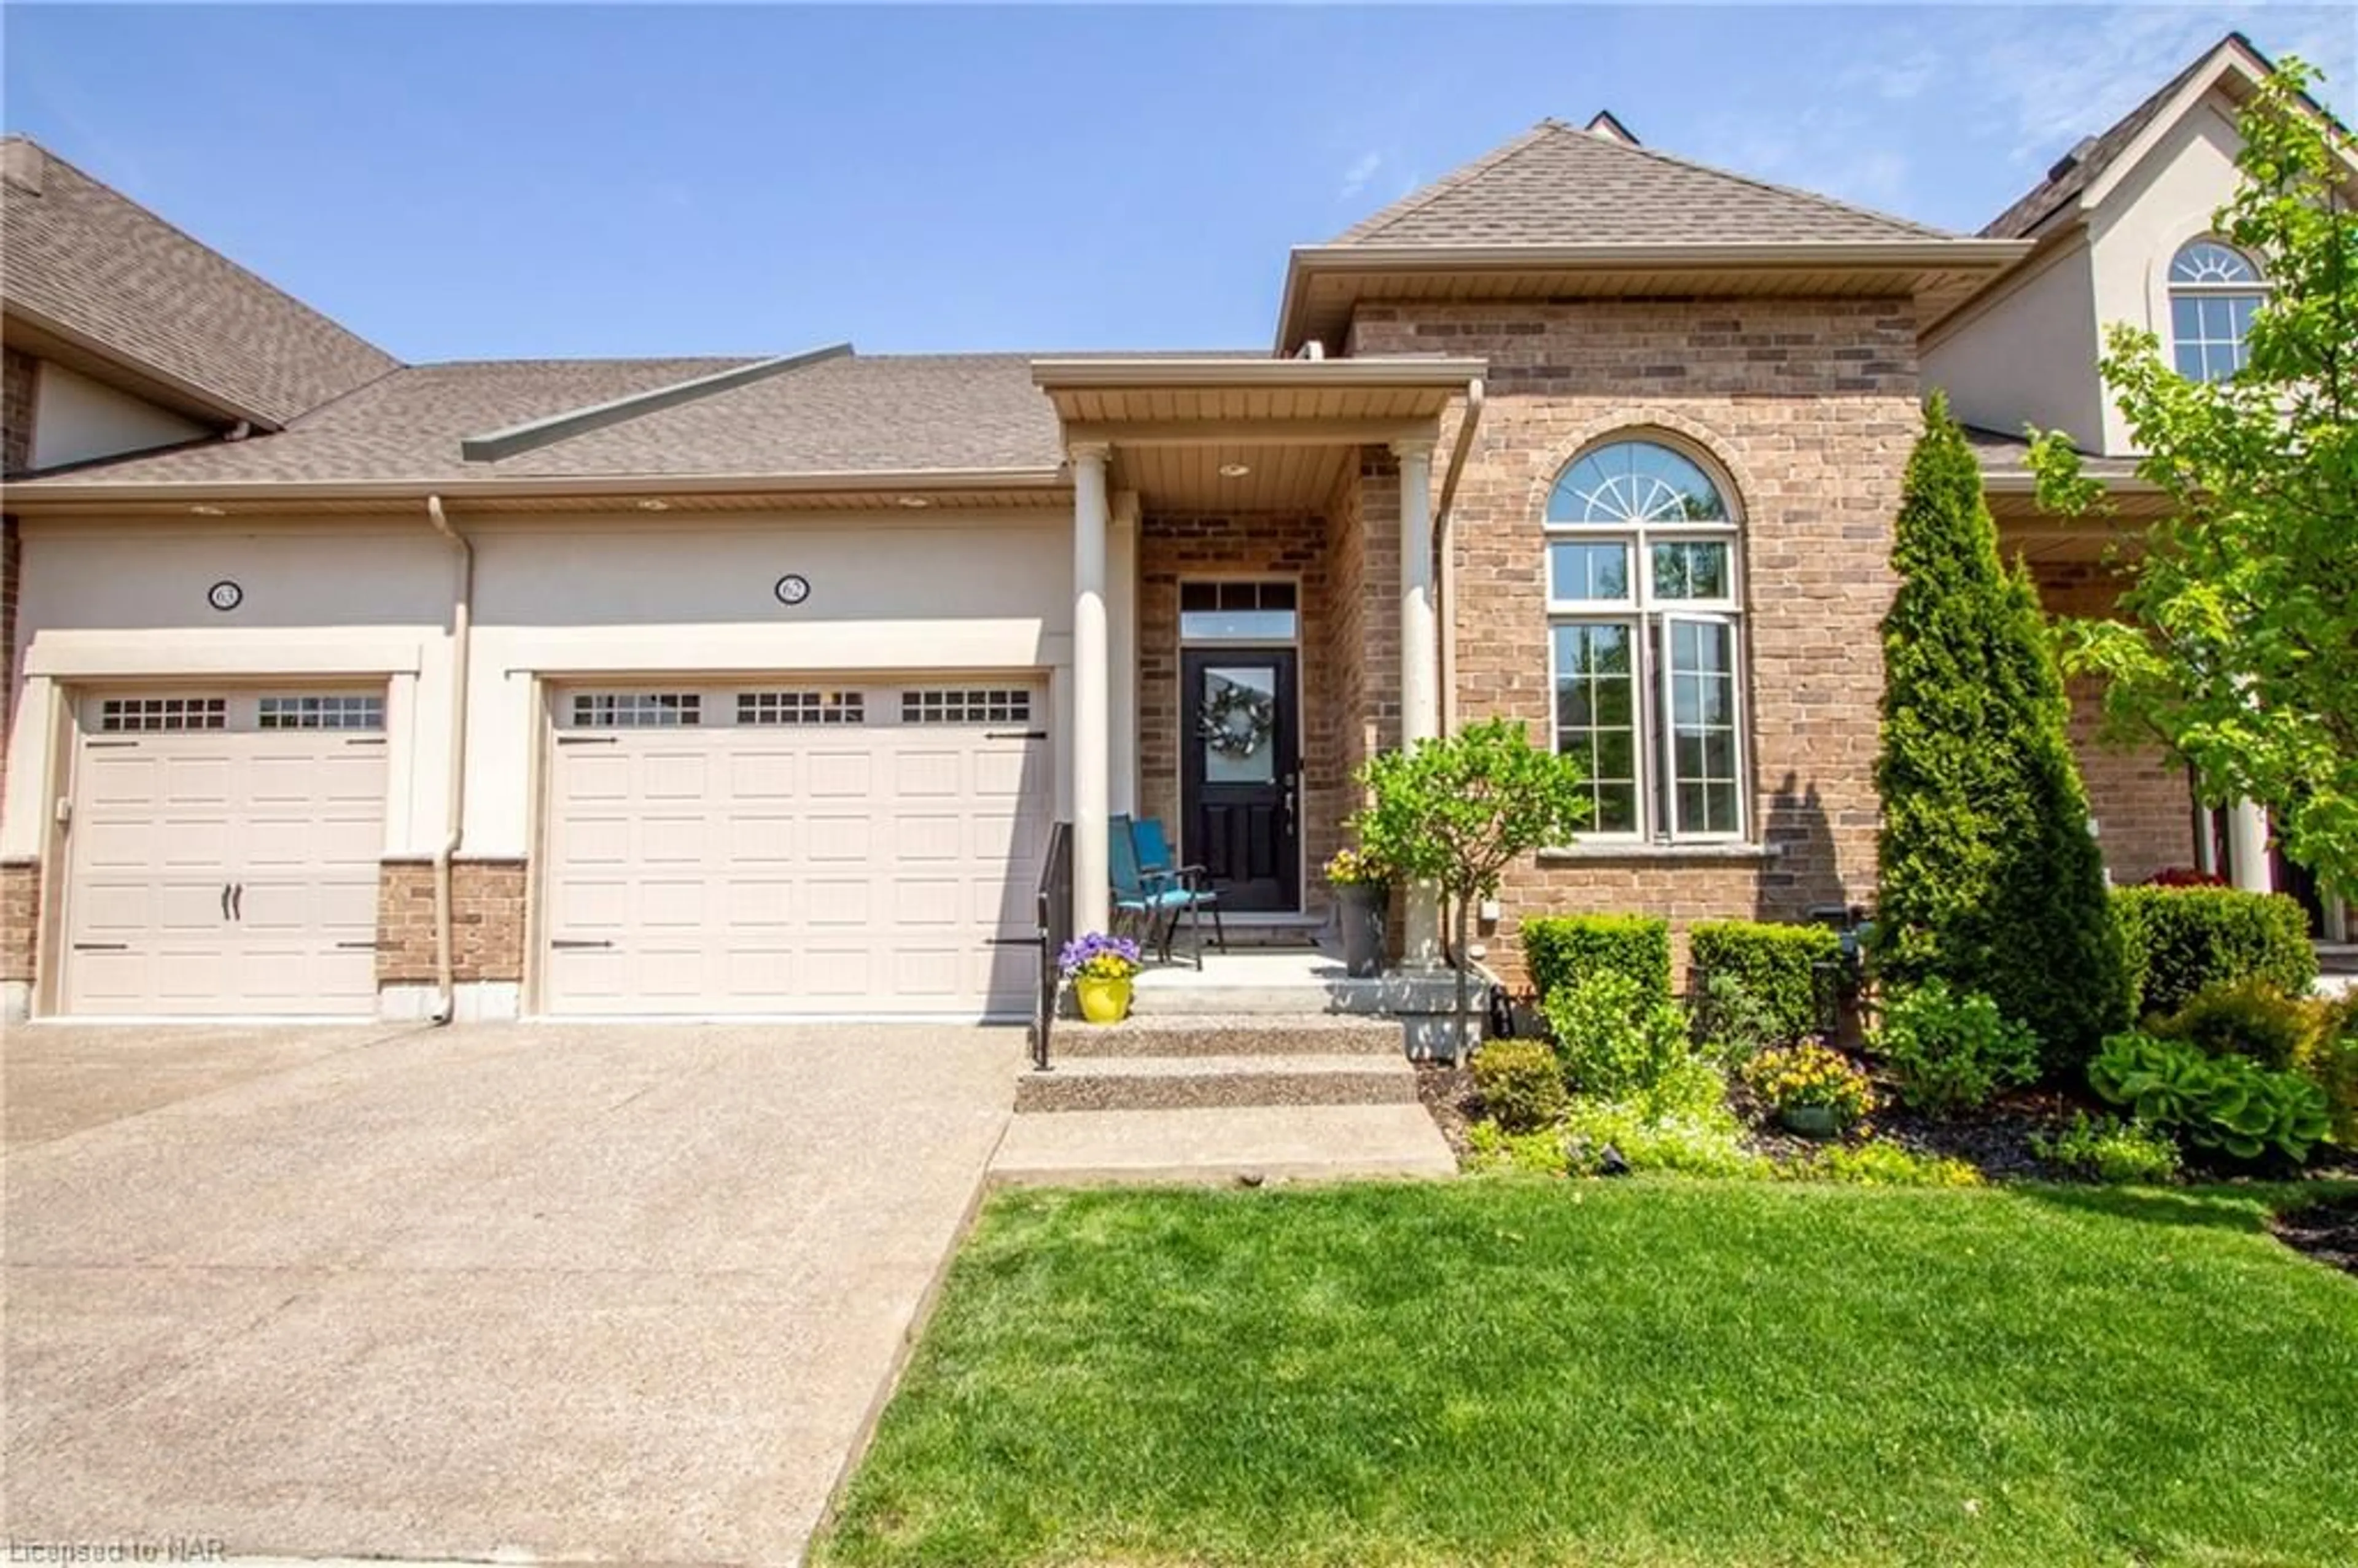 Home with brick exterior material for 3232 Montrose Rd #62, Niagara Falls Ontario L2H 0E8